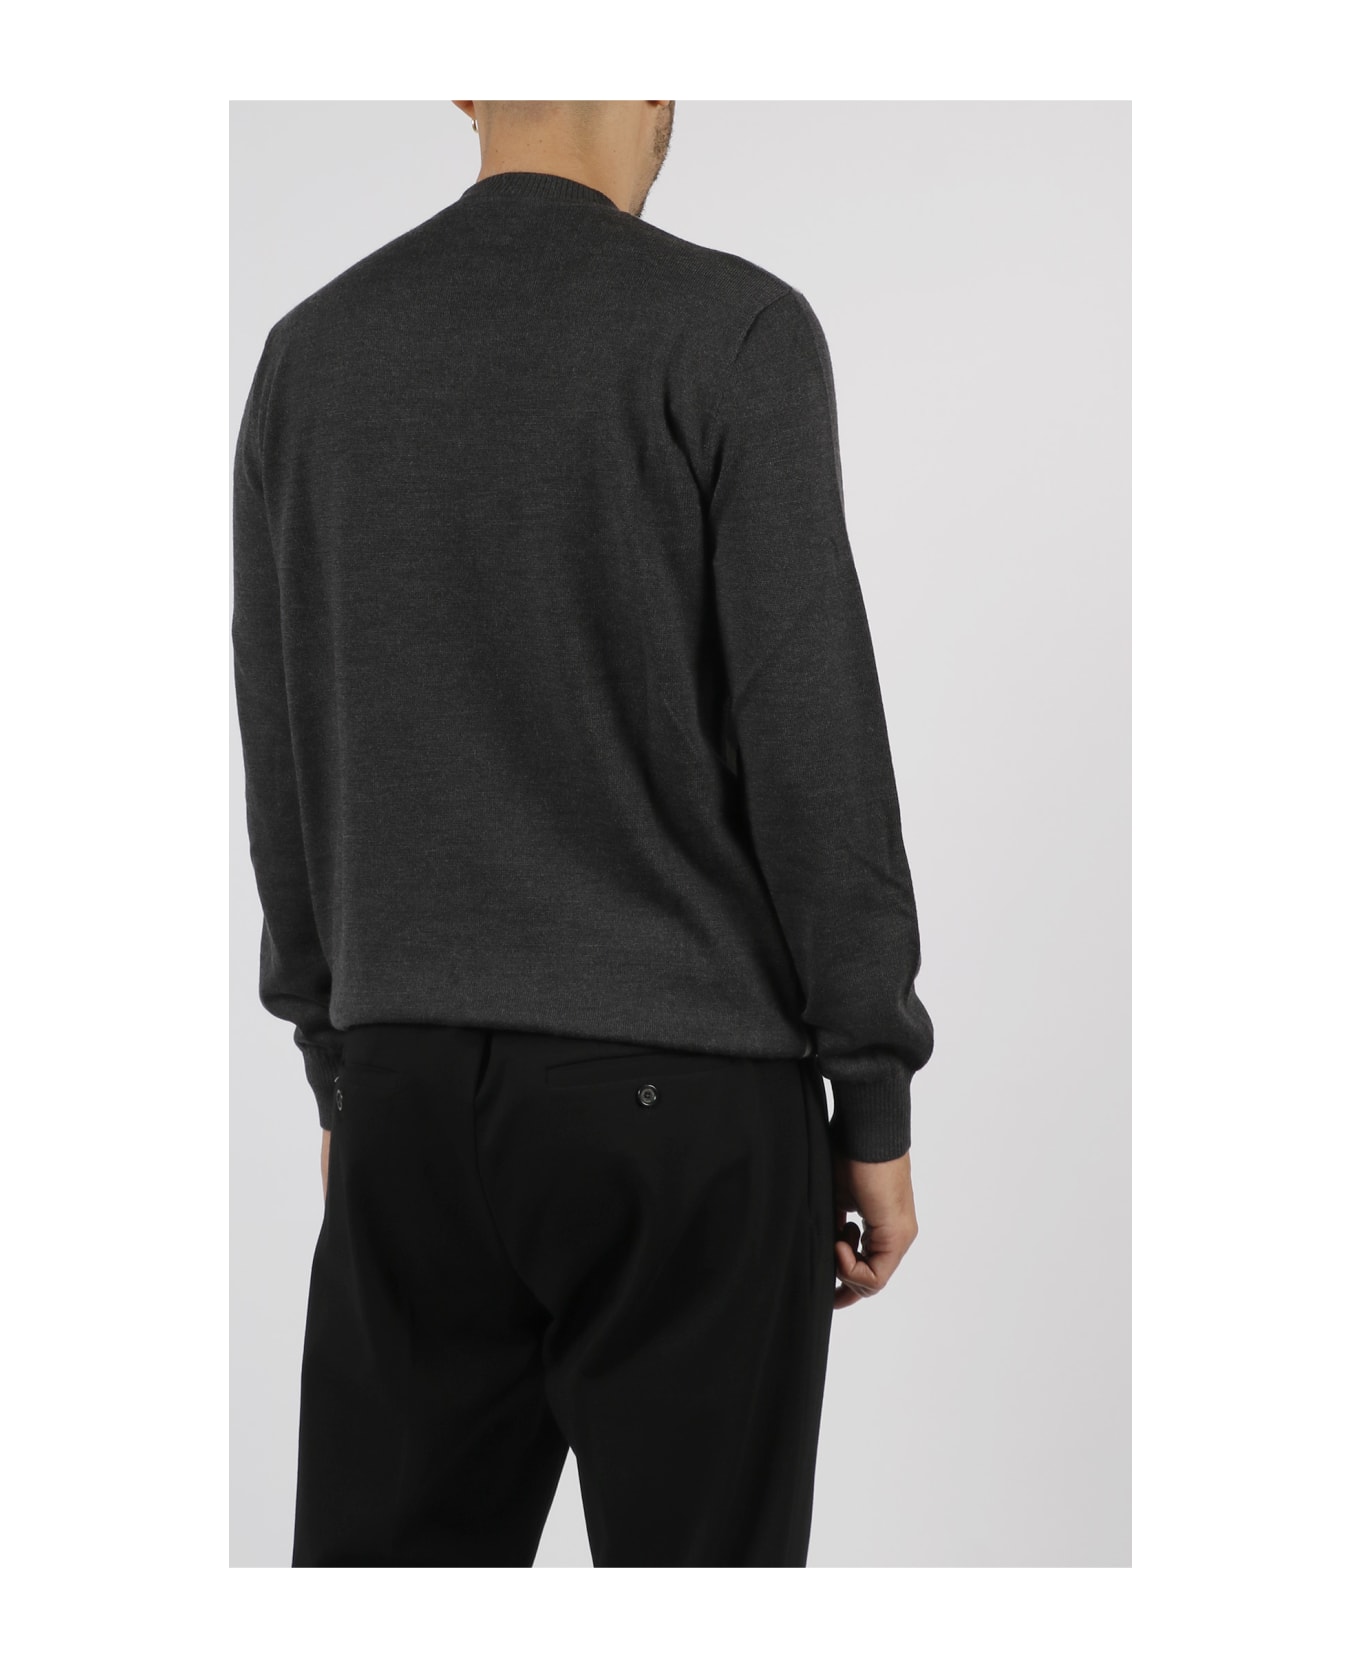 Fendi Macro Ff Wool Sweater - Grey